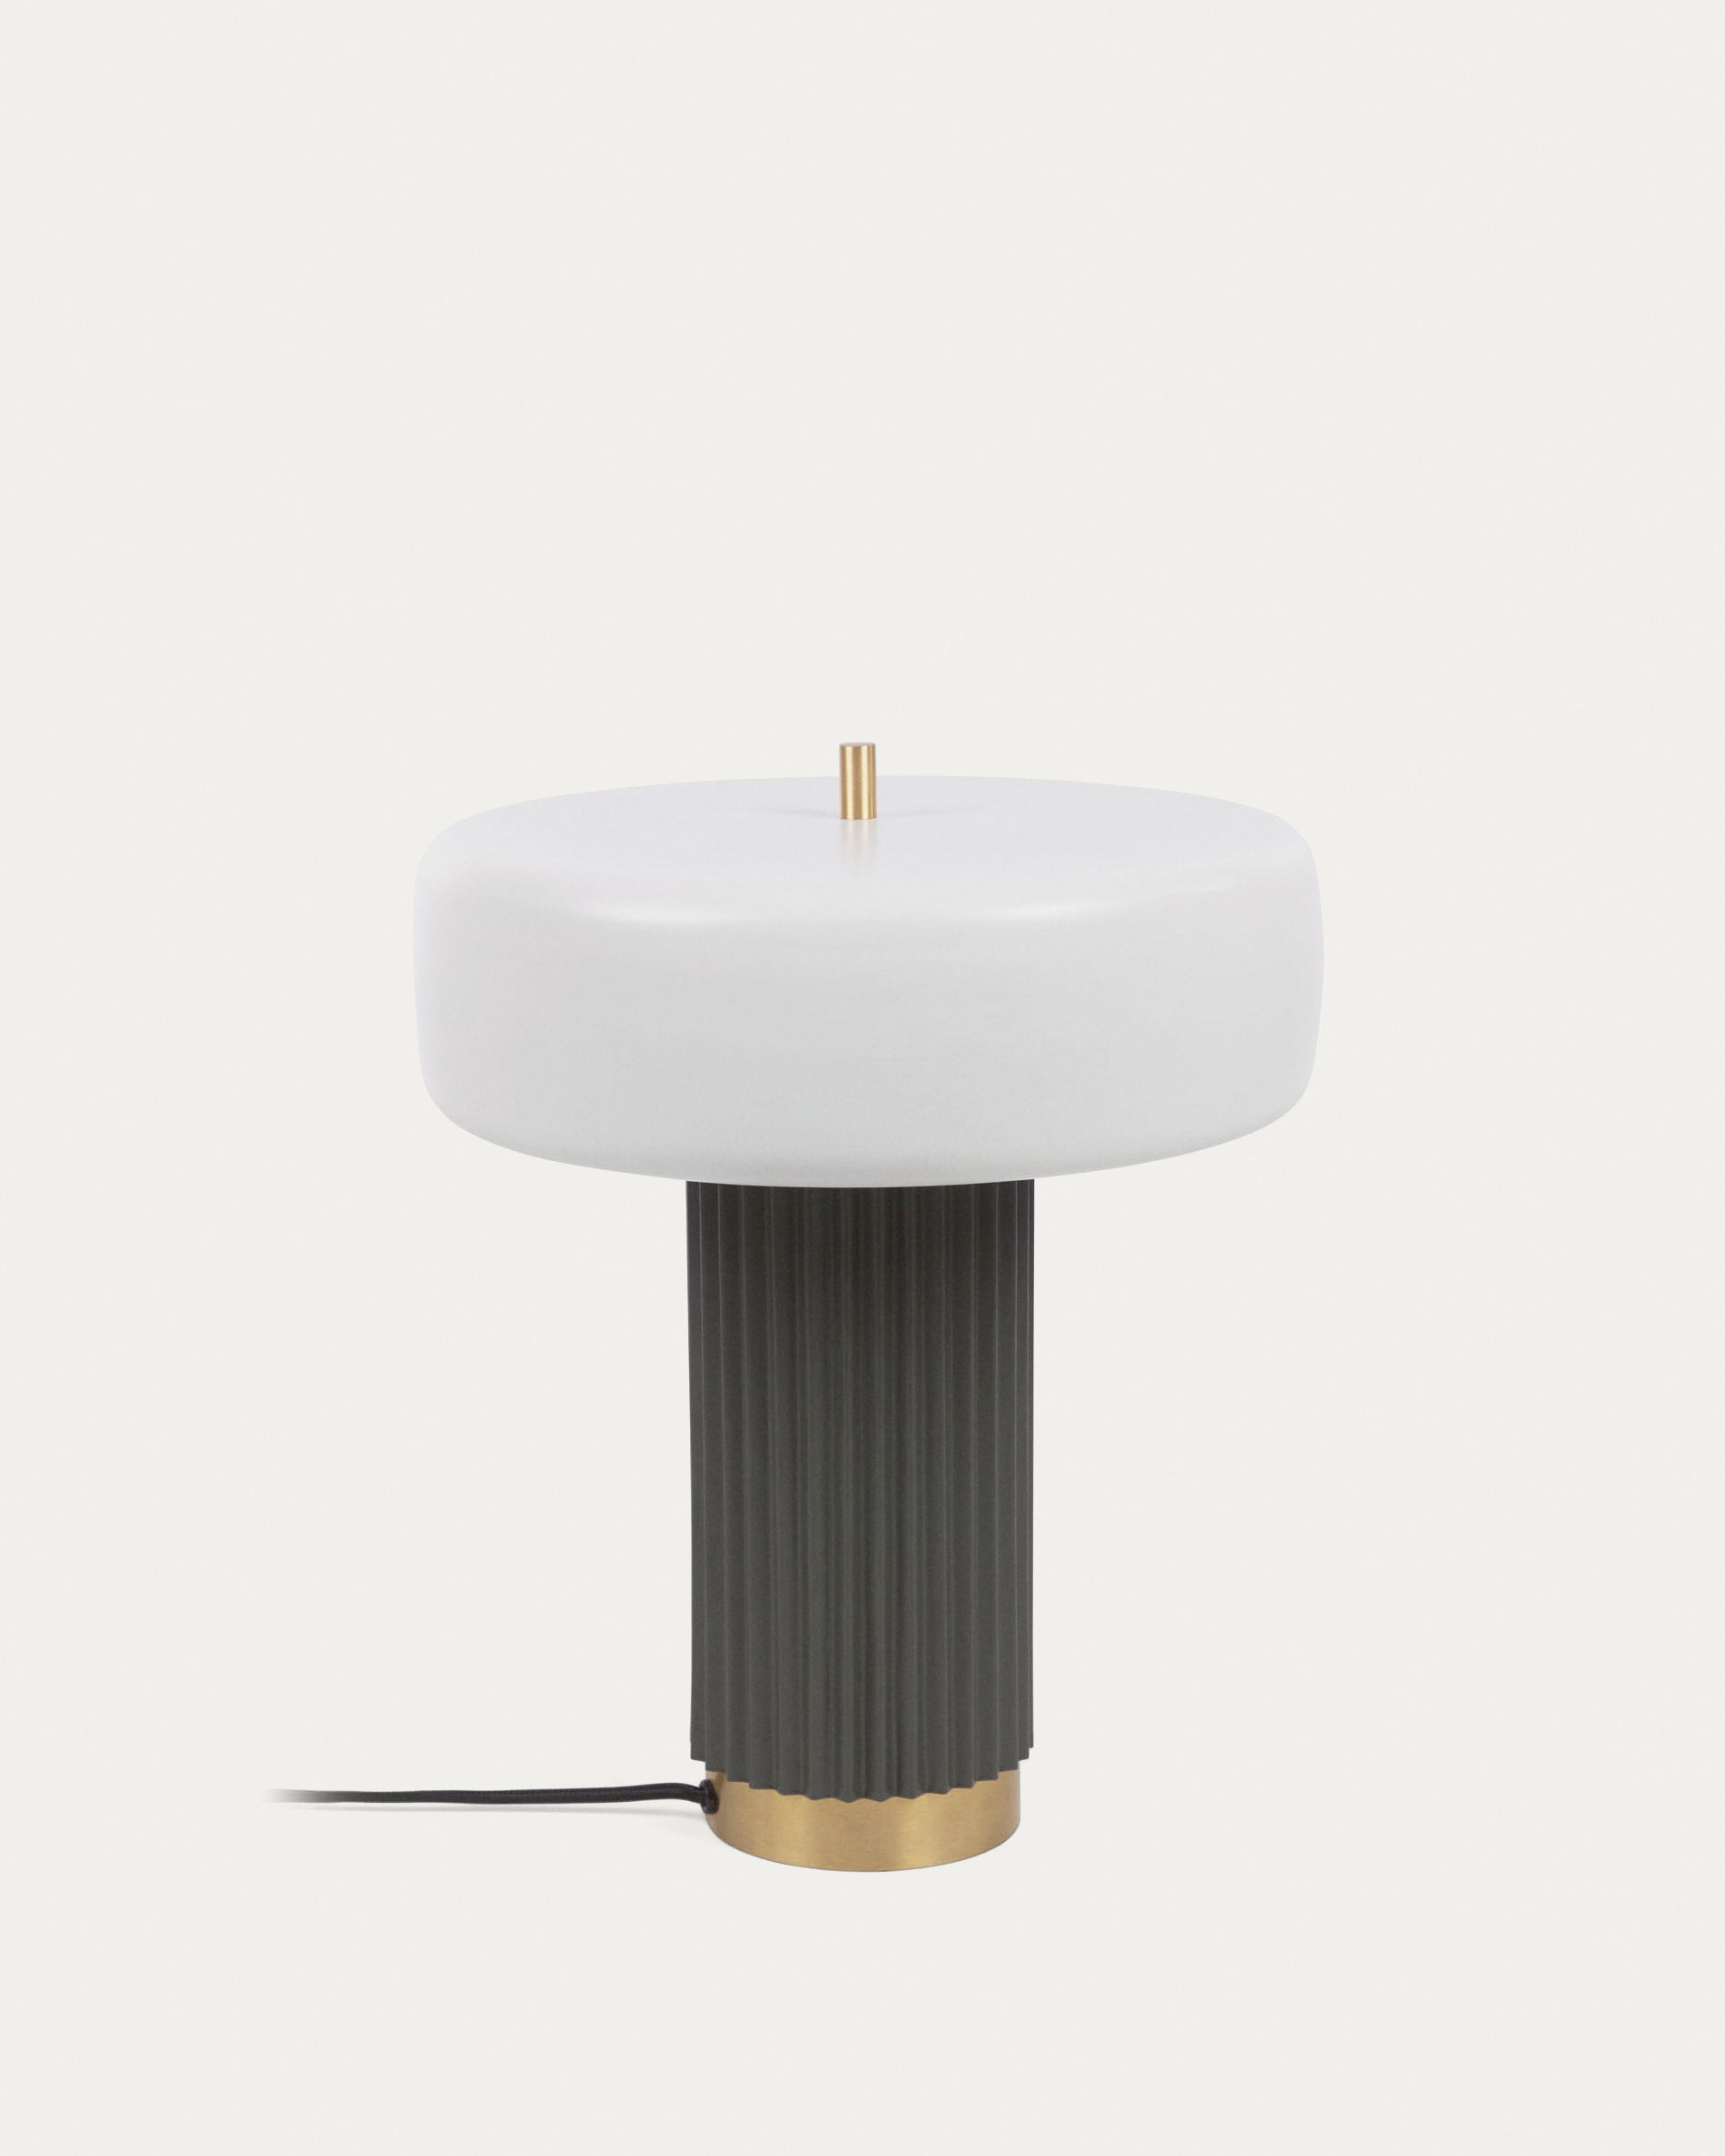 Serenella asztali lámpa fém kivitelben, fehér és zöld festett befejezéssel, UK adapterrel